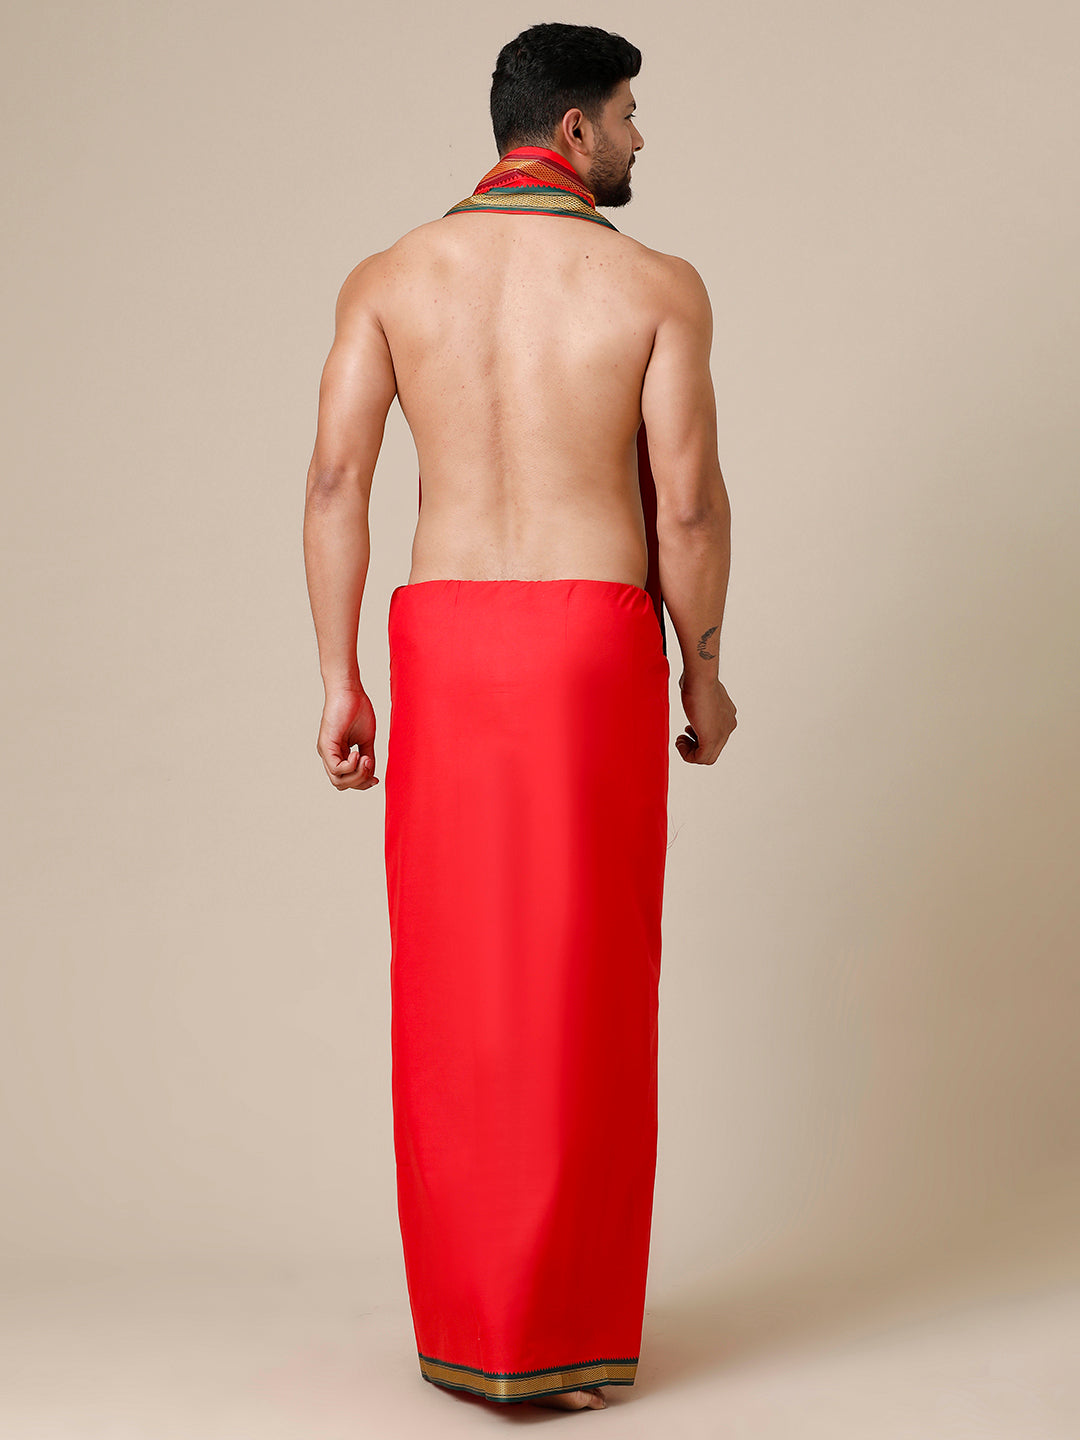 Mens Devotional Dhoti & Towel Set Brindhavan Red